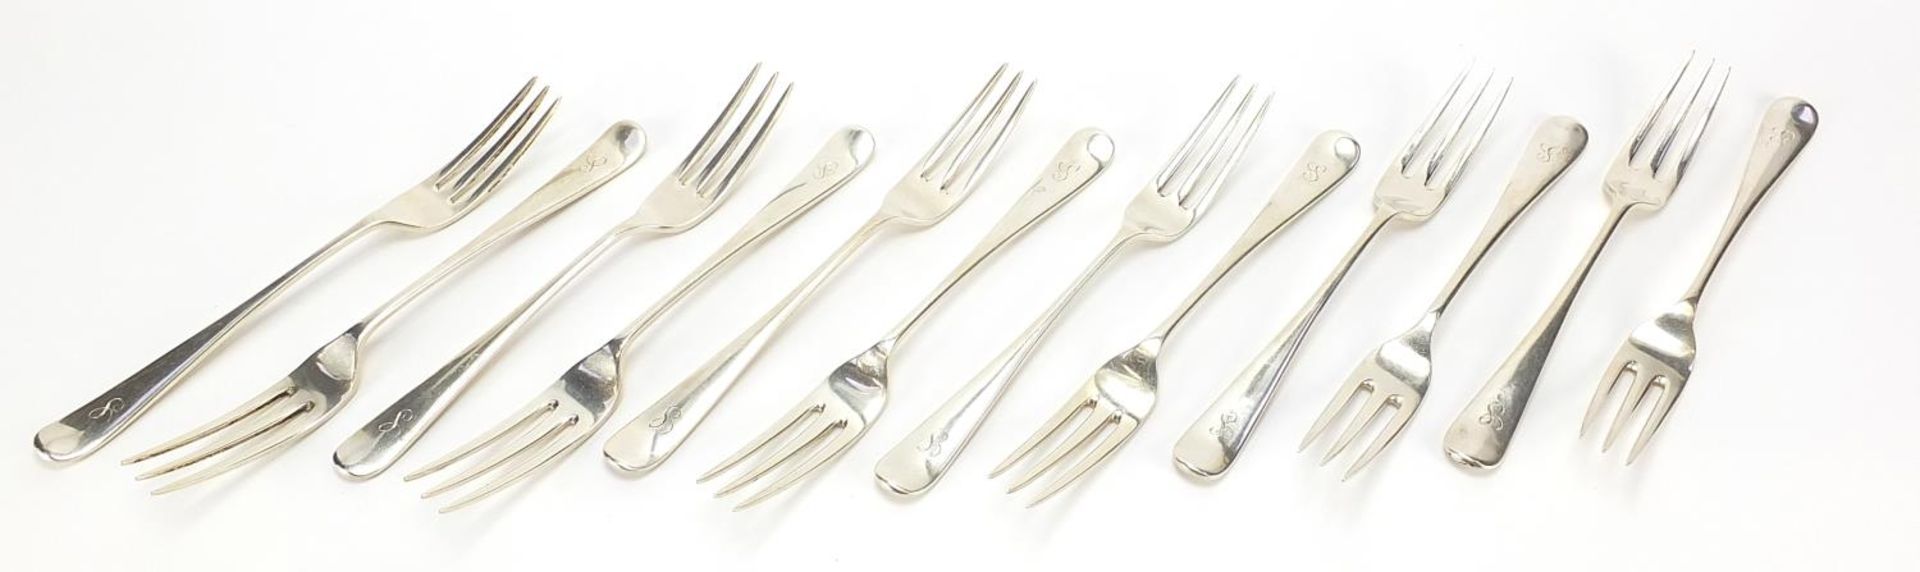 Elkington & Co, set of twelve Edward VII silver table forks, Birmingham 1905, 20.5cm in length,